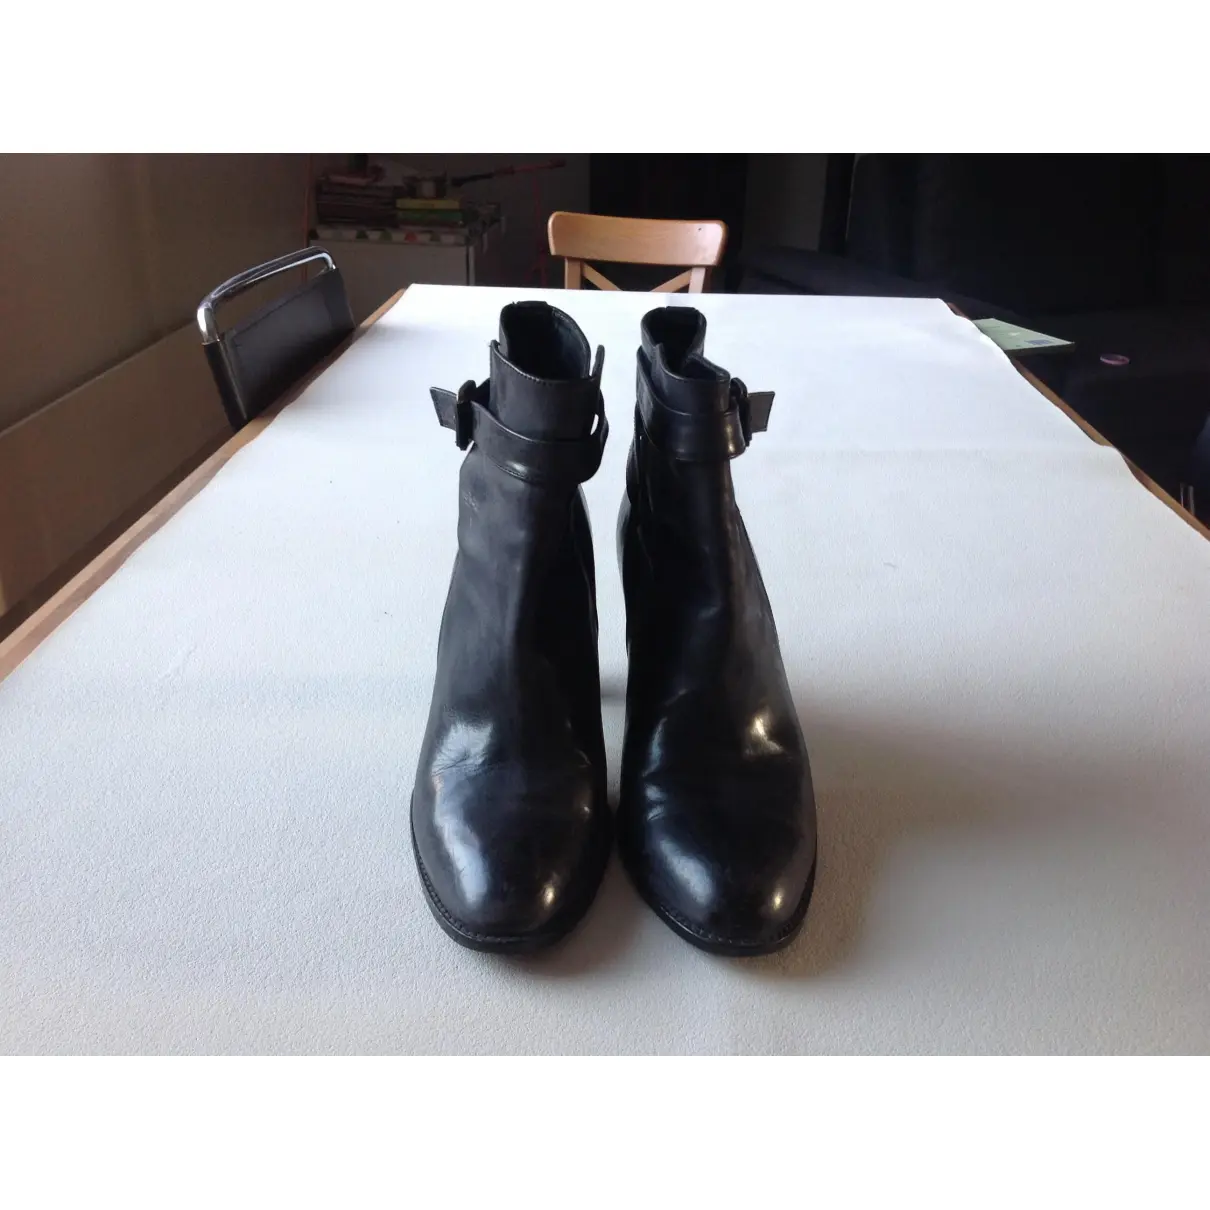 Colisée De Sacha Leather buckled boots for sale